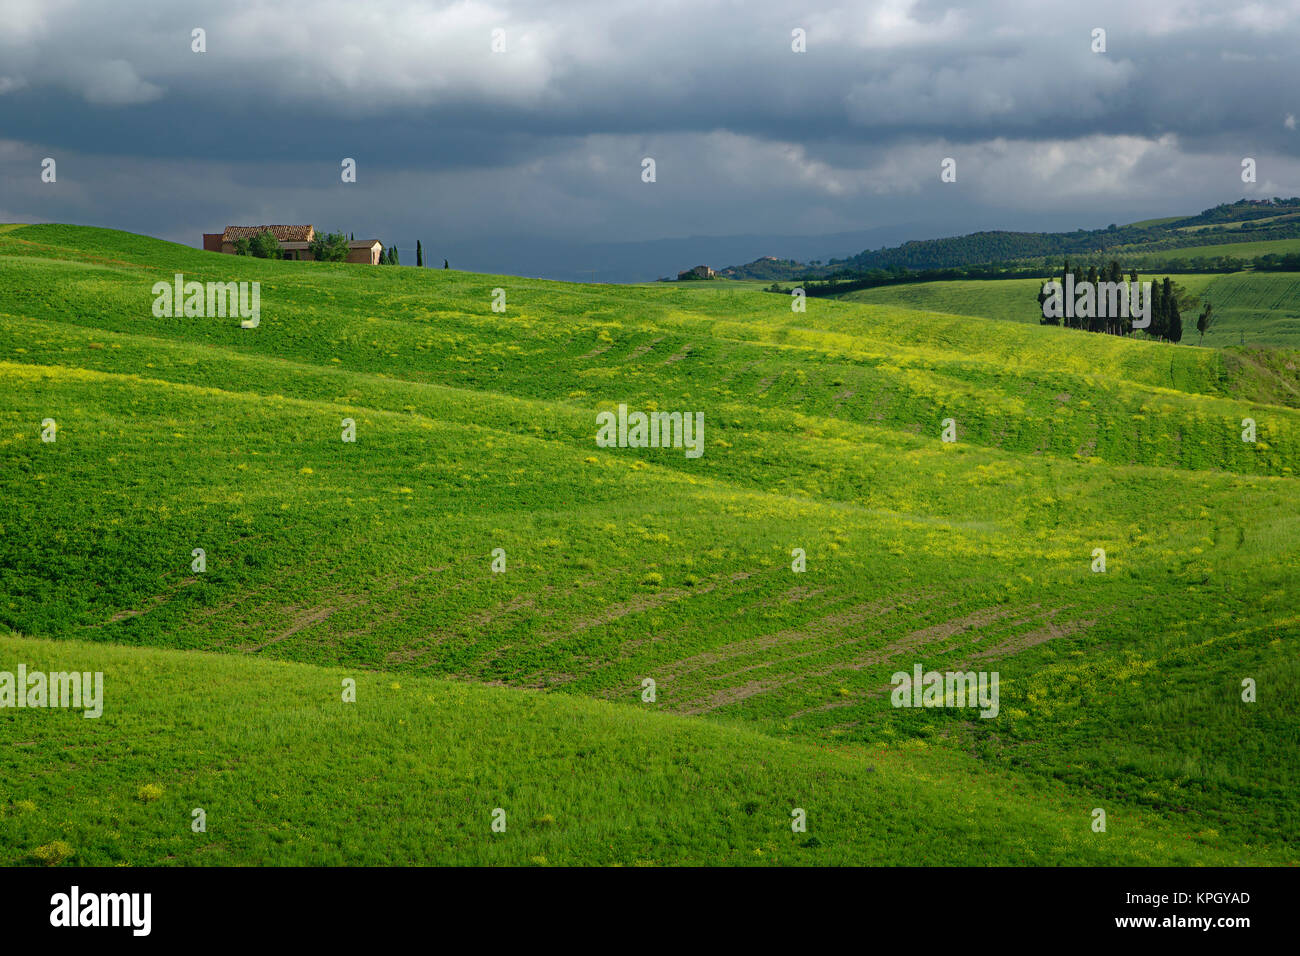 Agrícola región de Toscana, Italia Foto de stock